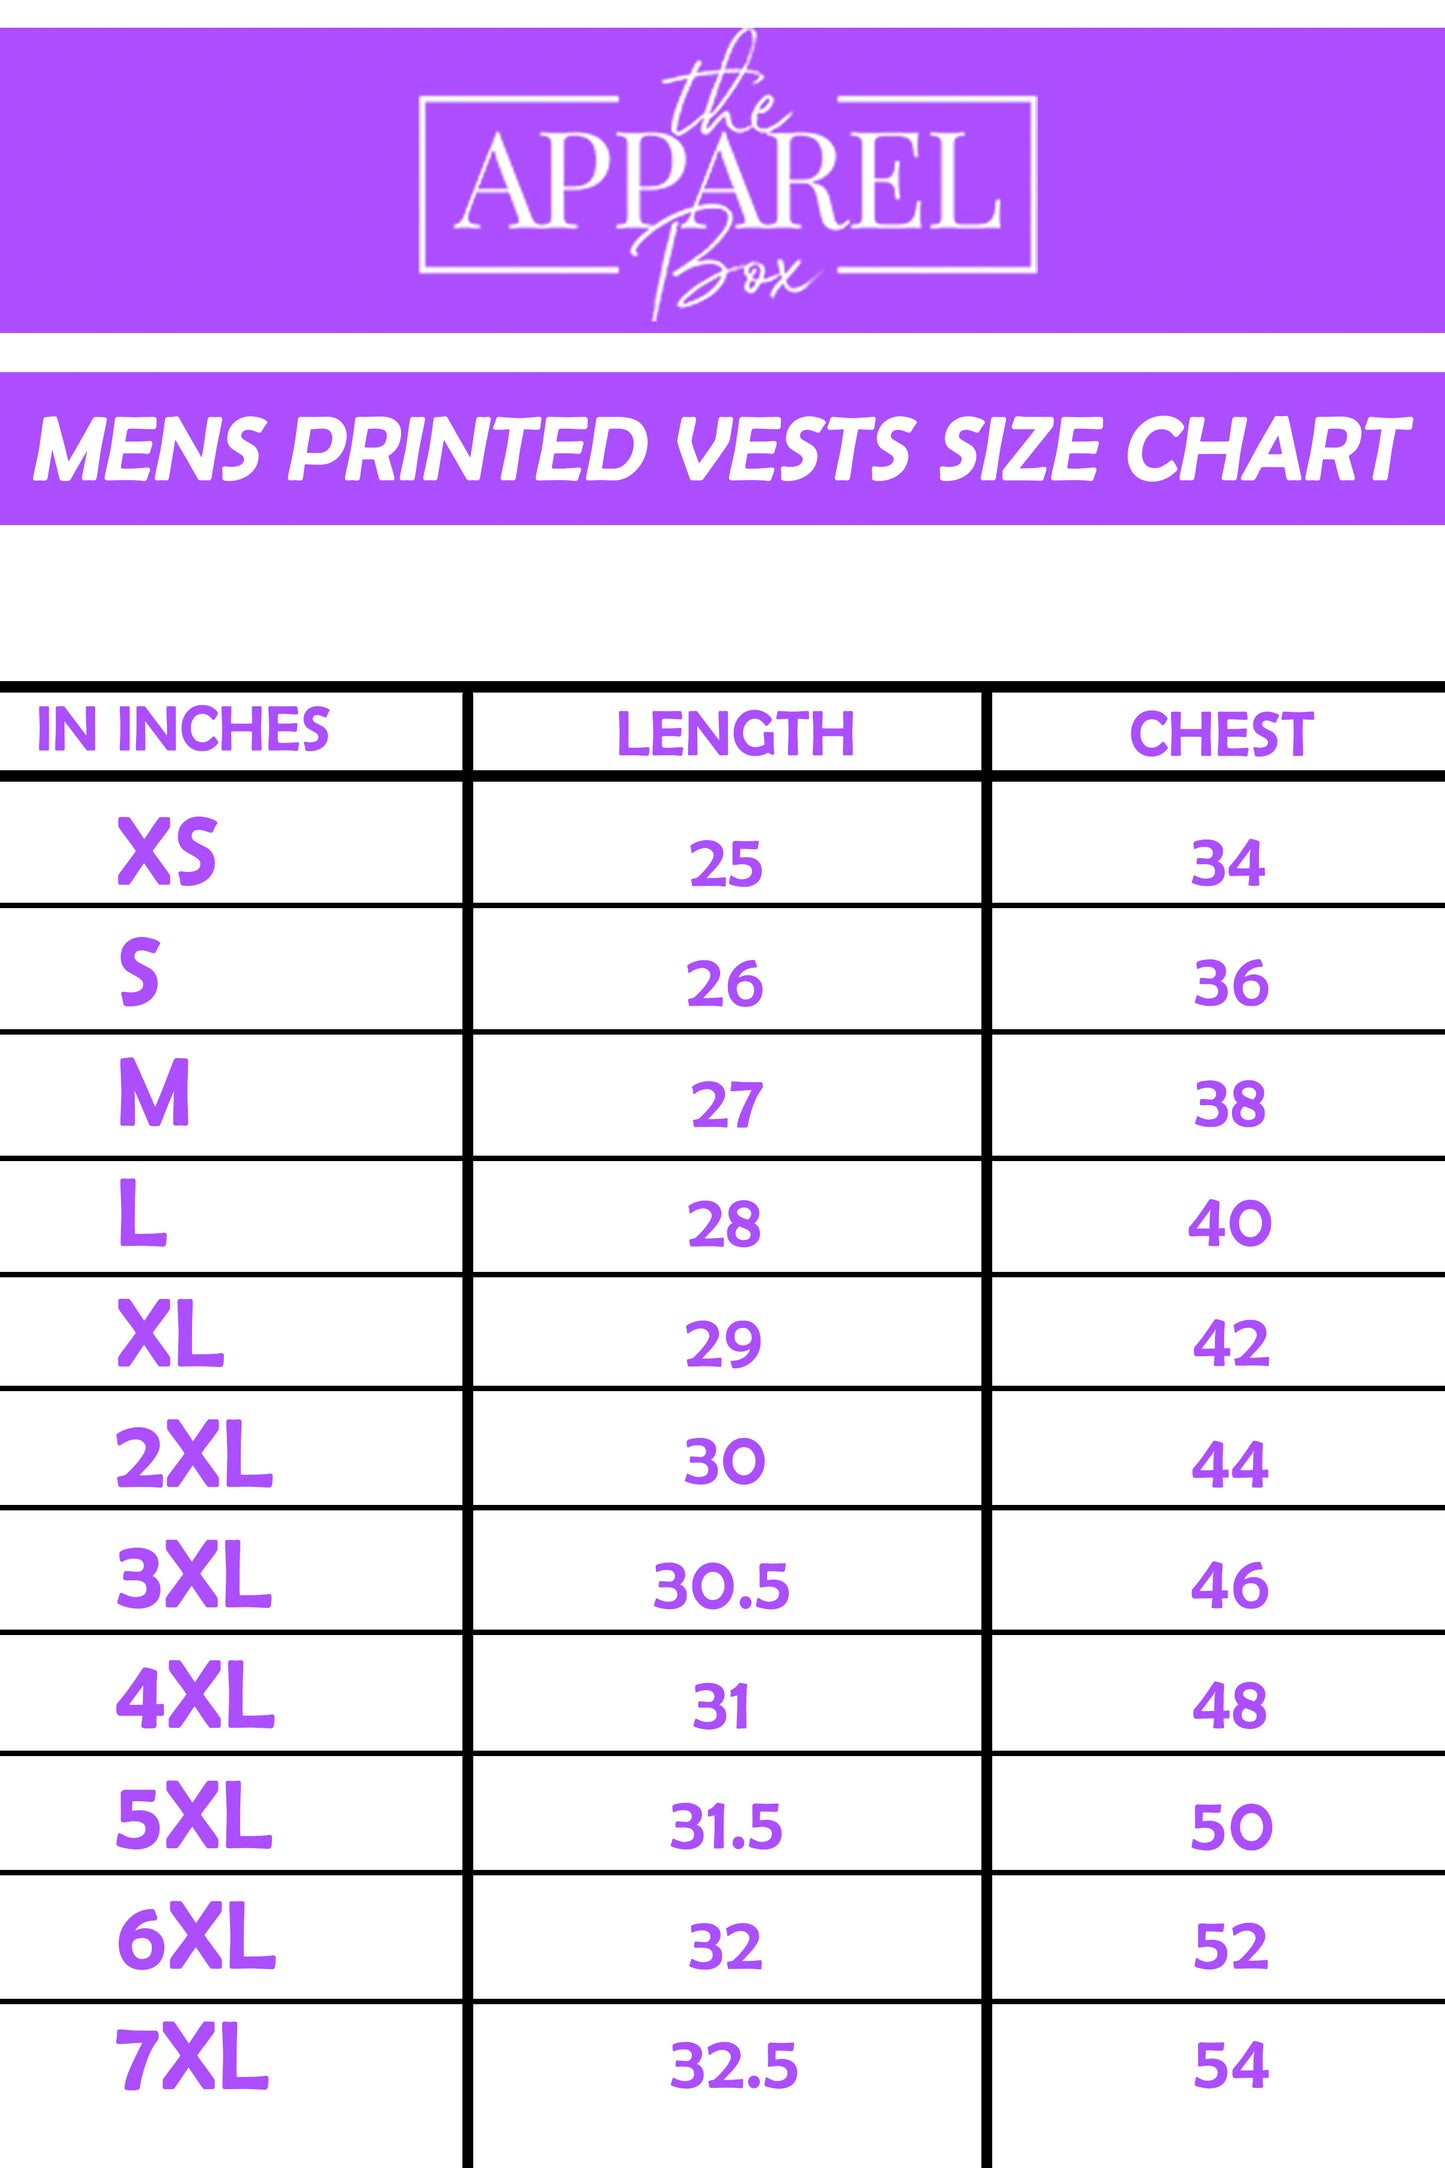 Printed Vest#20